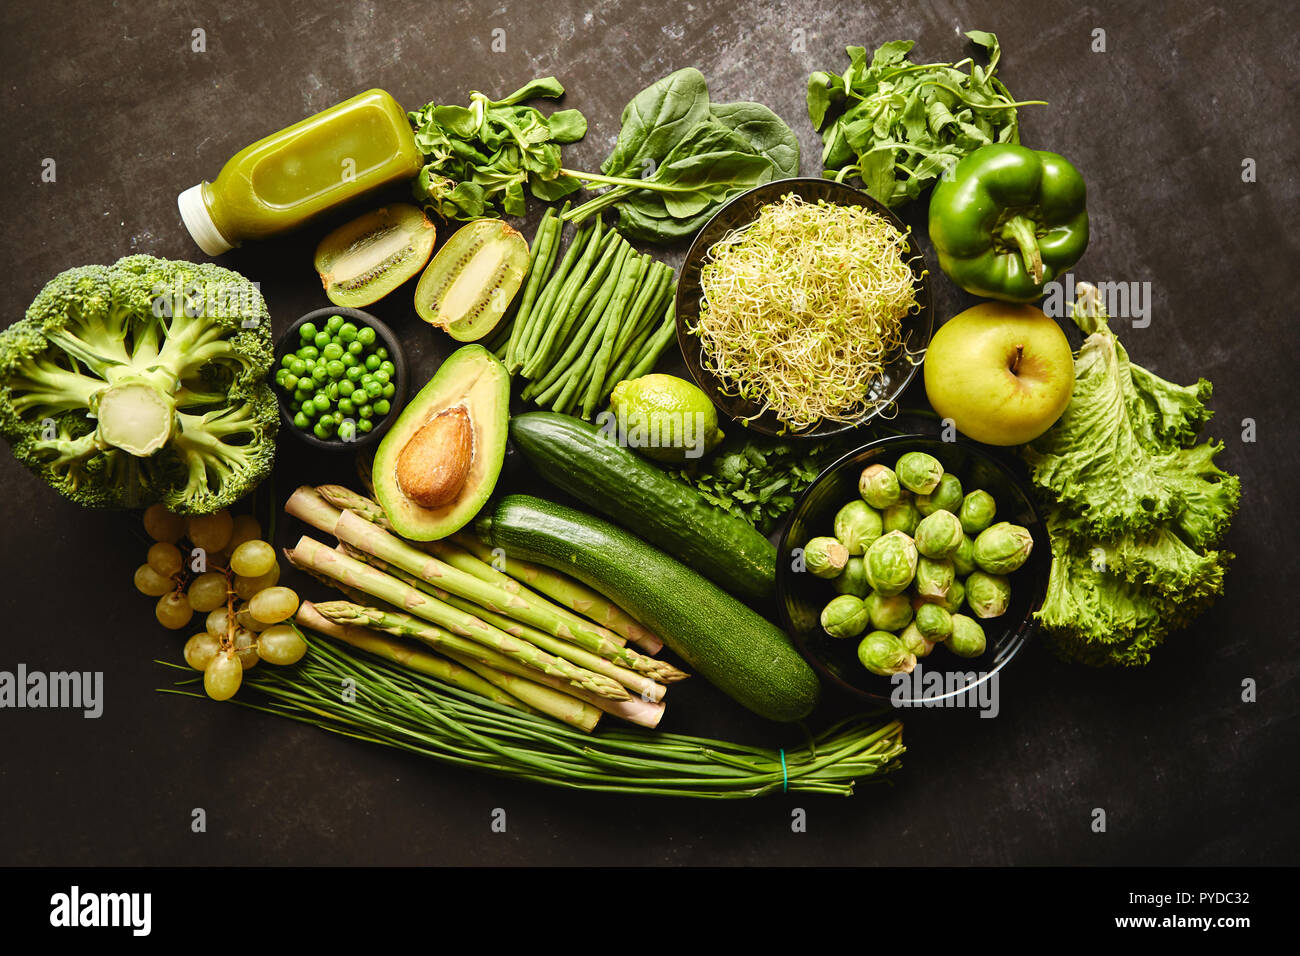 Green cibo sano e composizione con avocado, broccoli, apple smoothie, cucomber, asparagi, kiwi e fagiolo. Posto su uno sfondo scuro. Vista dall'alto. Foto Stock